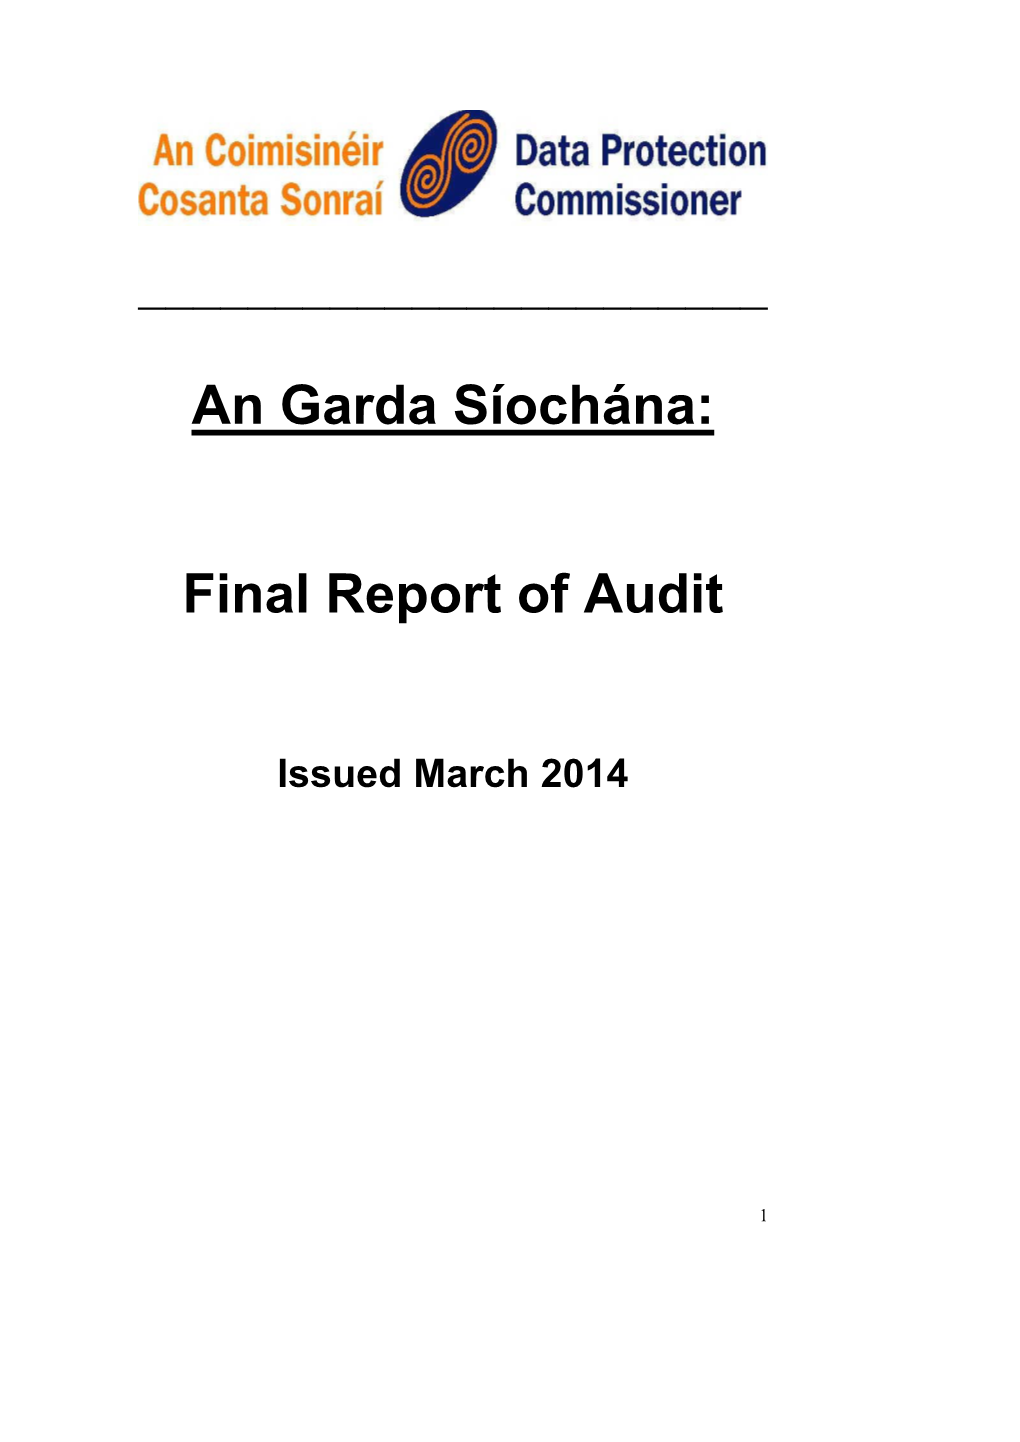 An Garda Síochána: Final Report of Audit